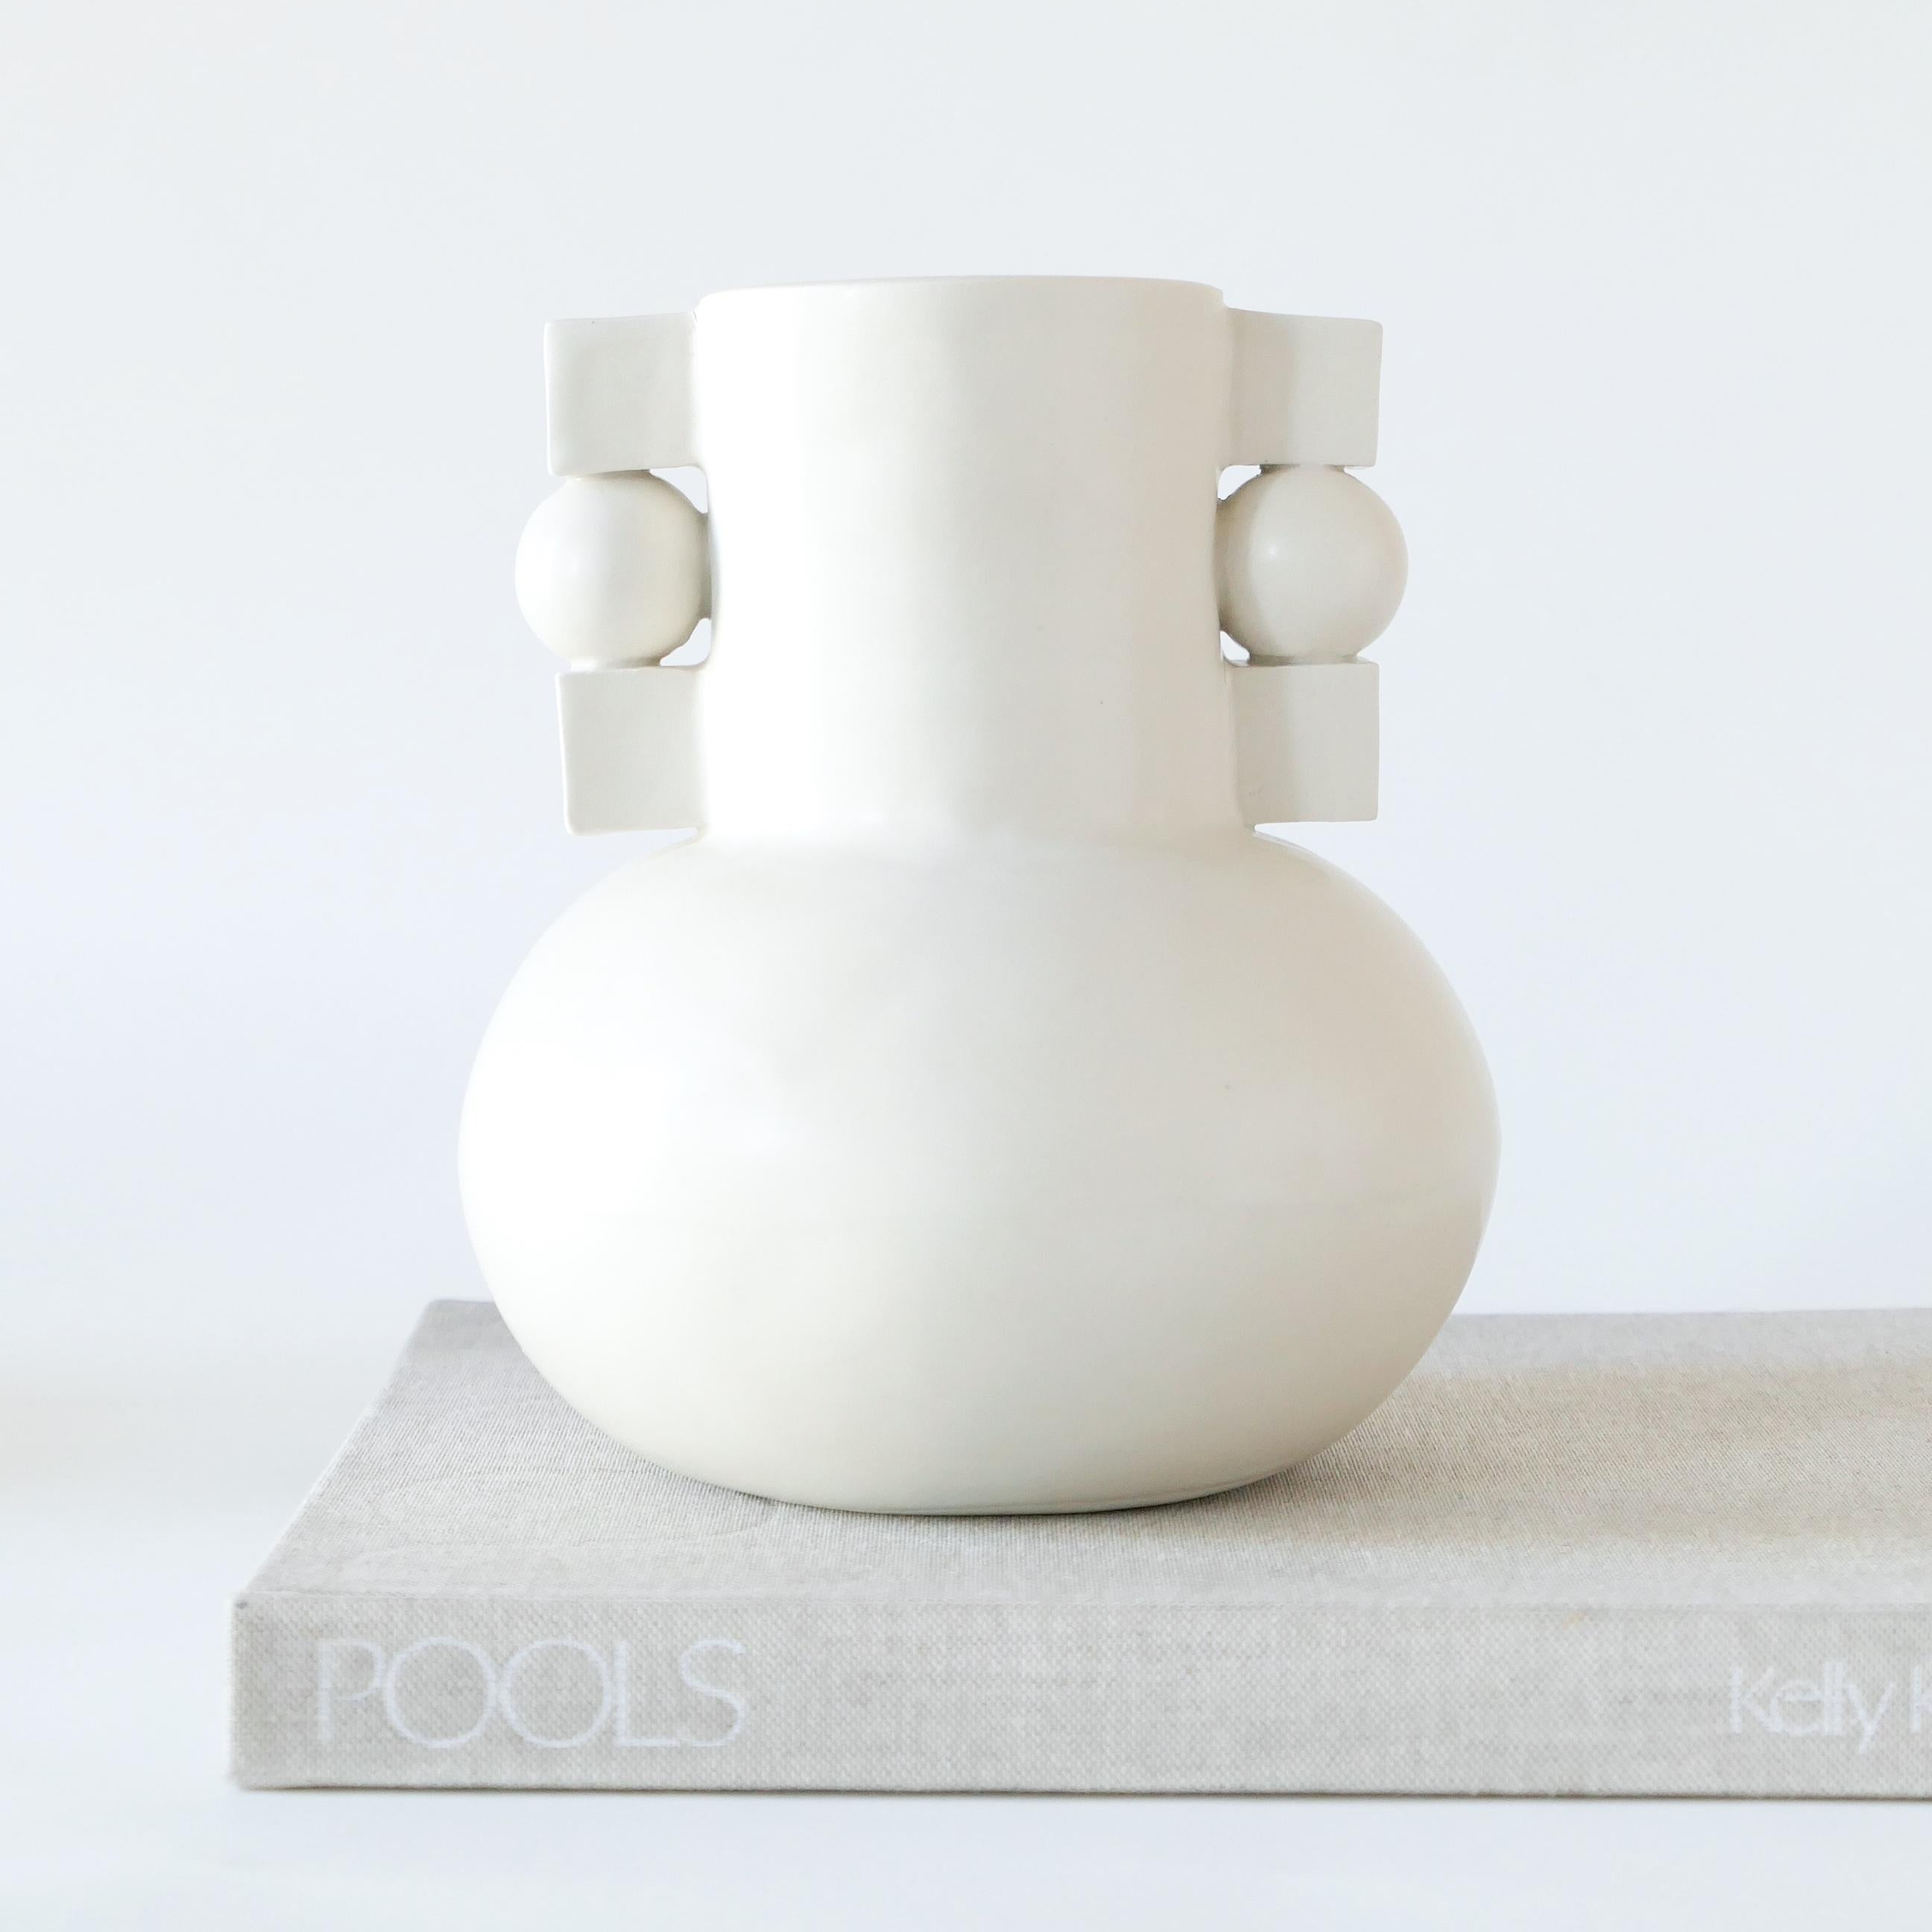 Weiße, vom Bauhaus inspirierte Vase aus Steinzeug, mit einer weichen, klaren Glasur versehen. 

Karina Vieira ist eine in Brooklyn ansässige Keramikerin, die sich auf handgefertigte Gefäße konzentriert. 

Ihr Werk bezieht sich auf verschiedene